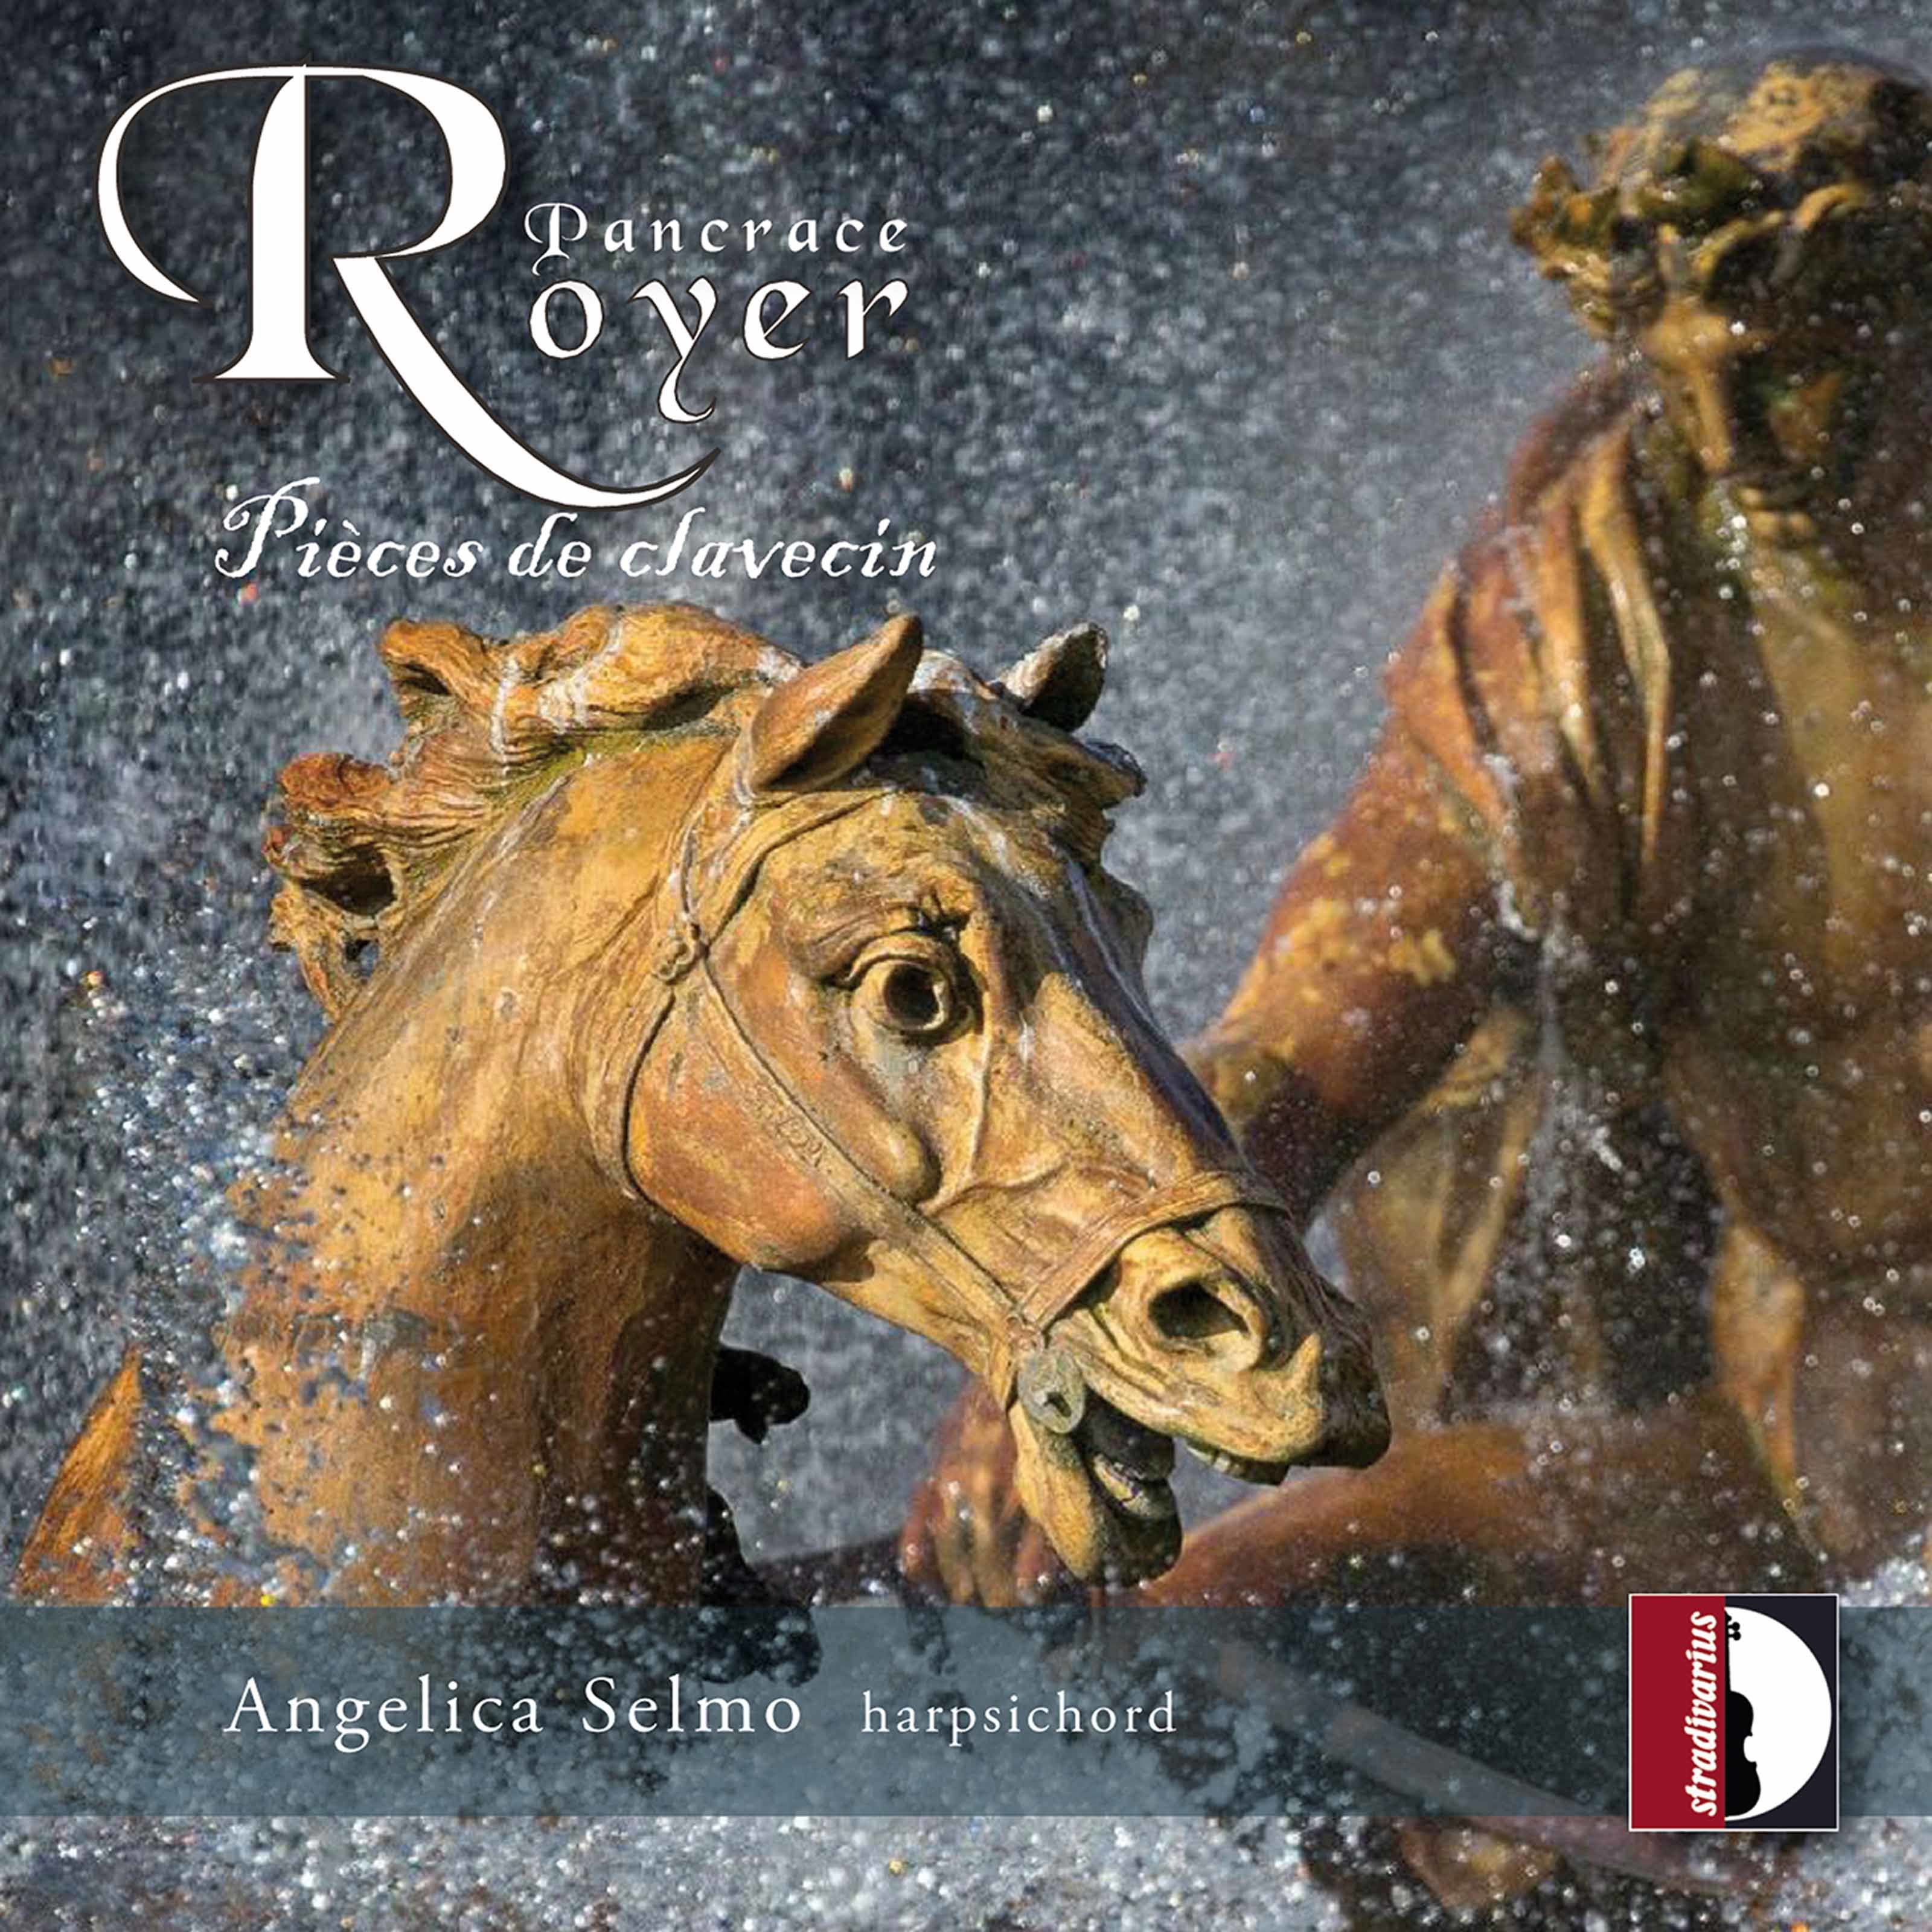 Angelica Selmo – Royer – Pieces de clavecin (2021) [FLAC 24bit/192kHz]